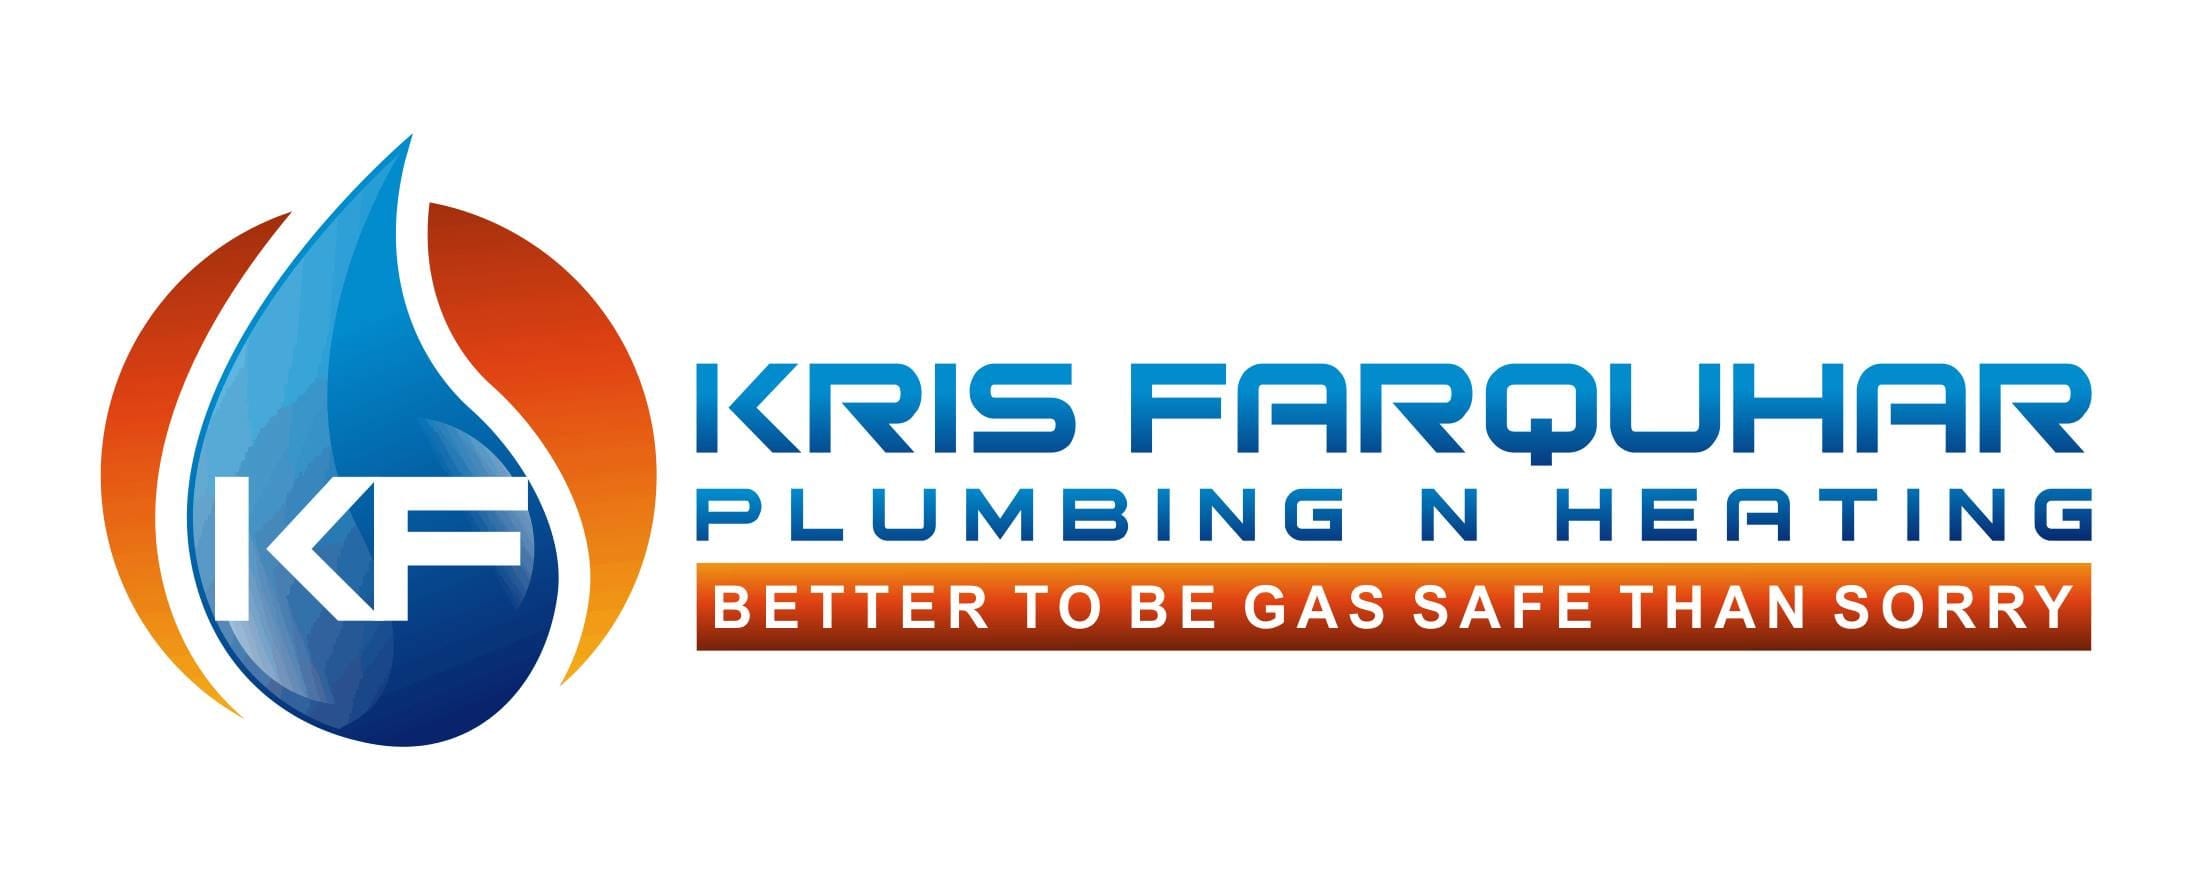 Kris Farquhar Plumbing N Heating